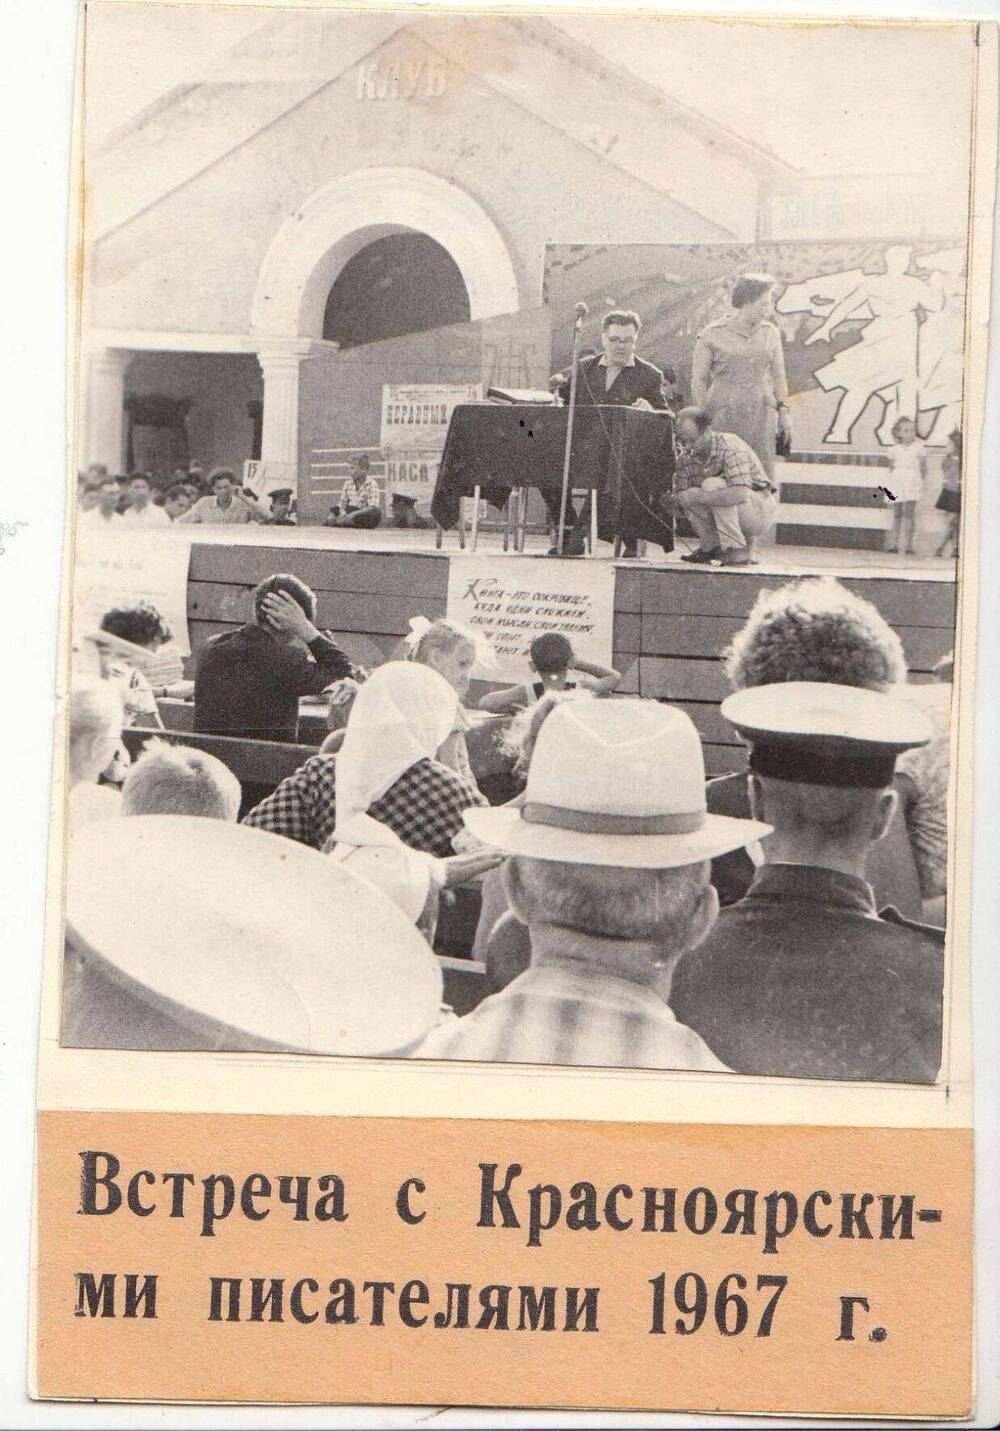 Фото мероприятий, проводимые коллективом библиотеки им. Маяковского, 60-80 -е гг.